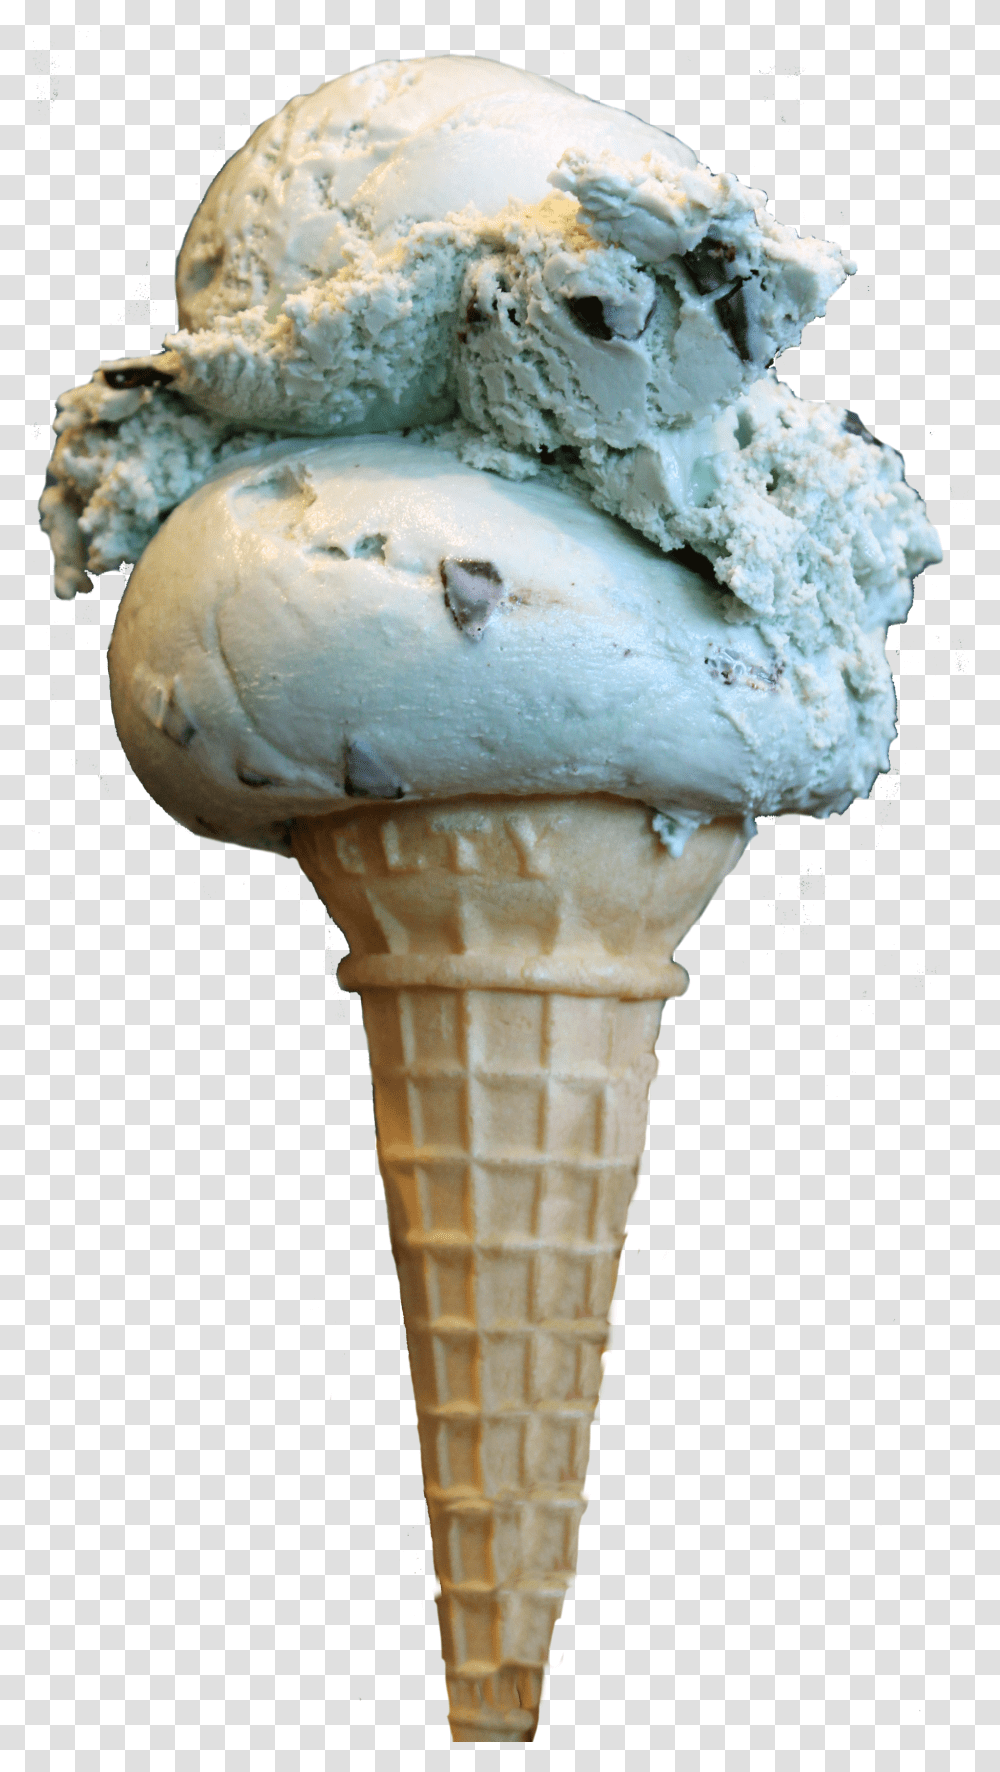 Ice Cream Cone Transparent Png